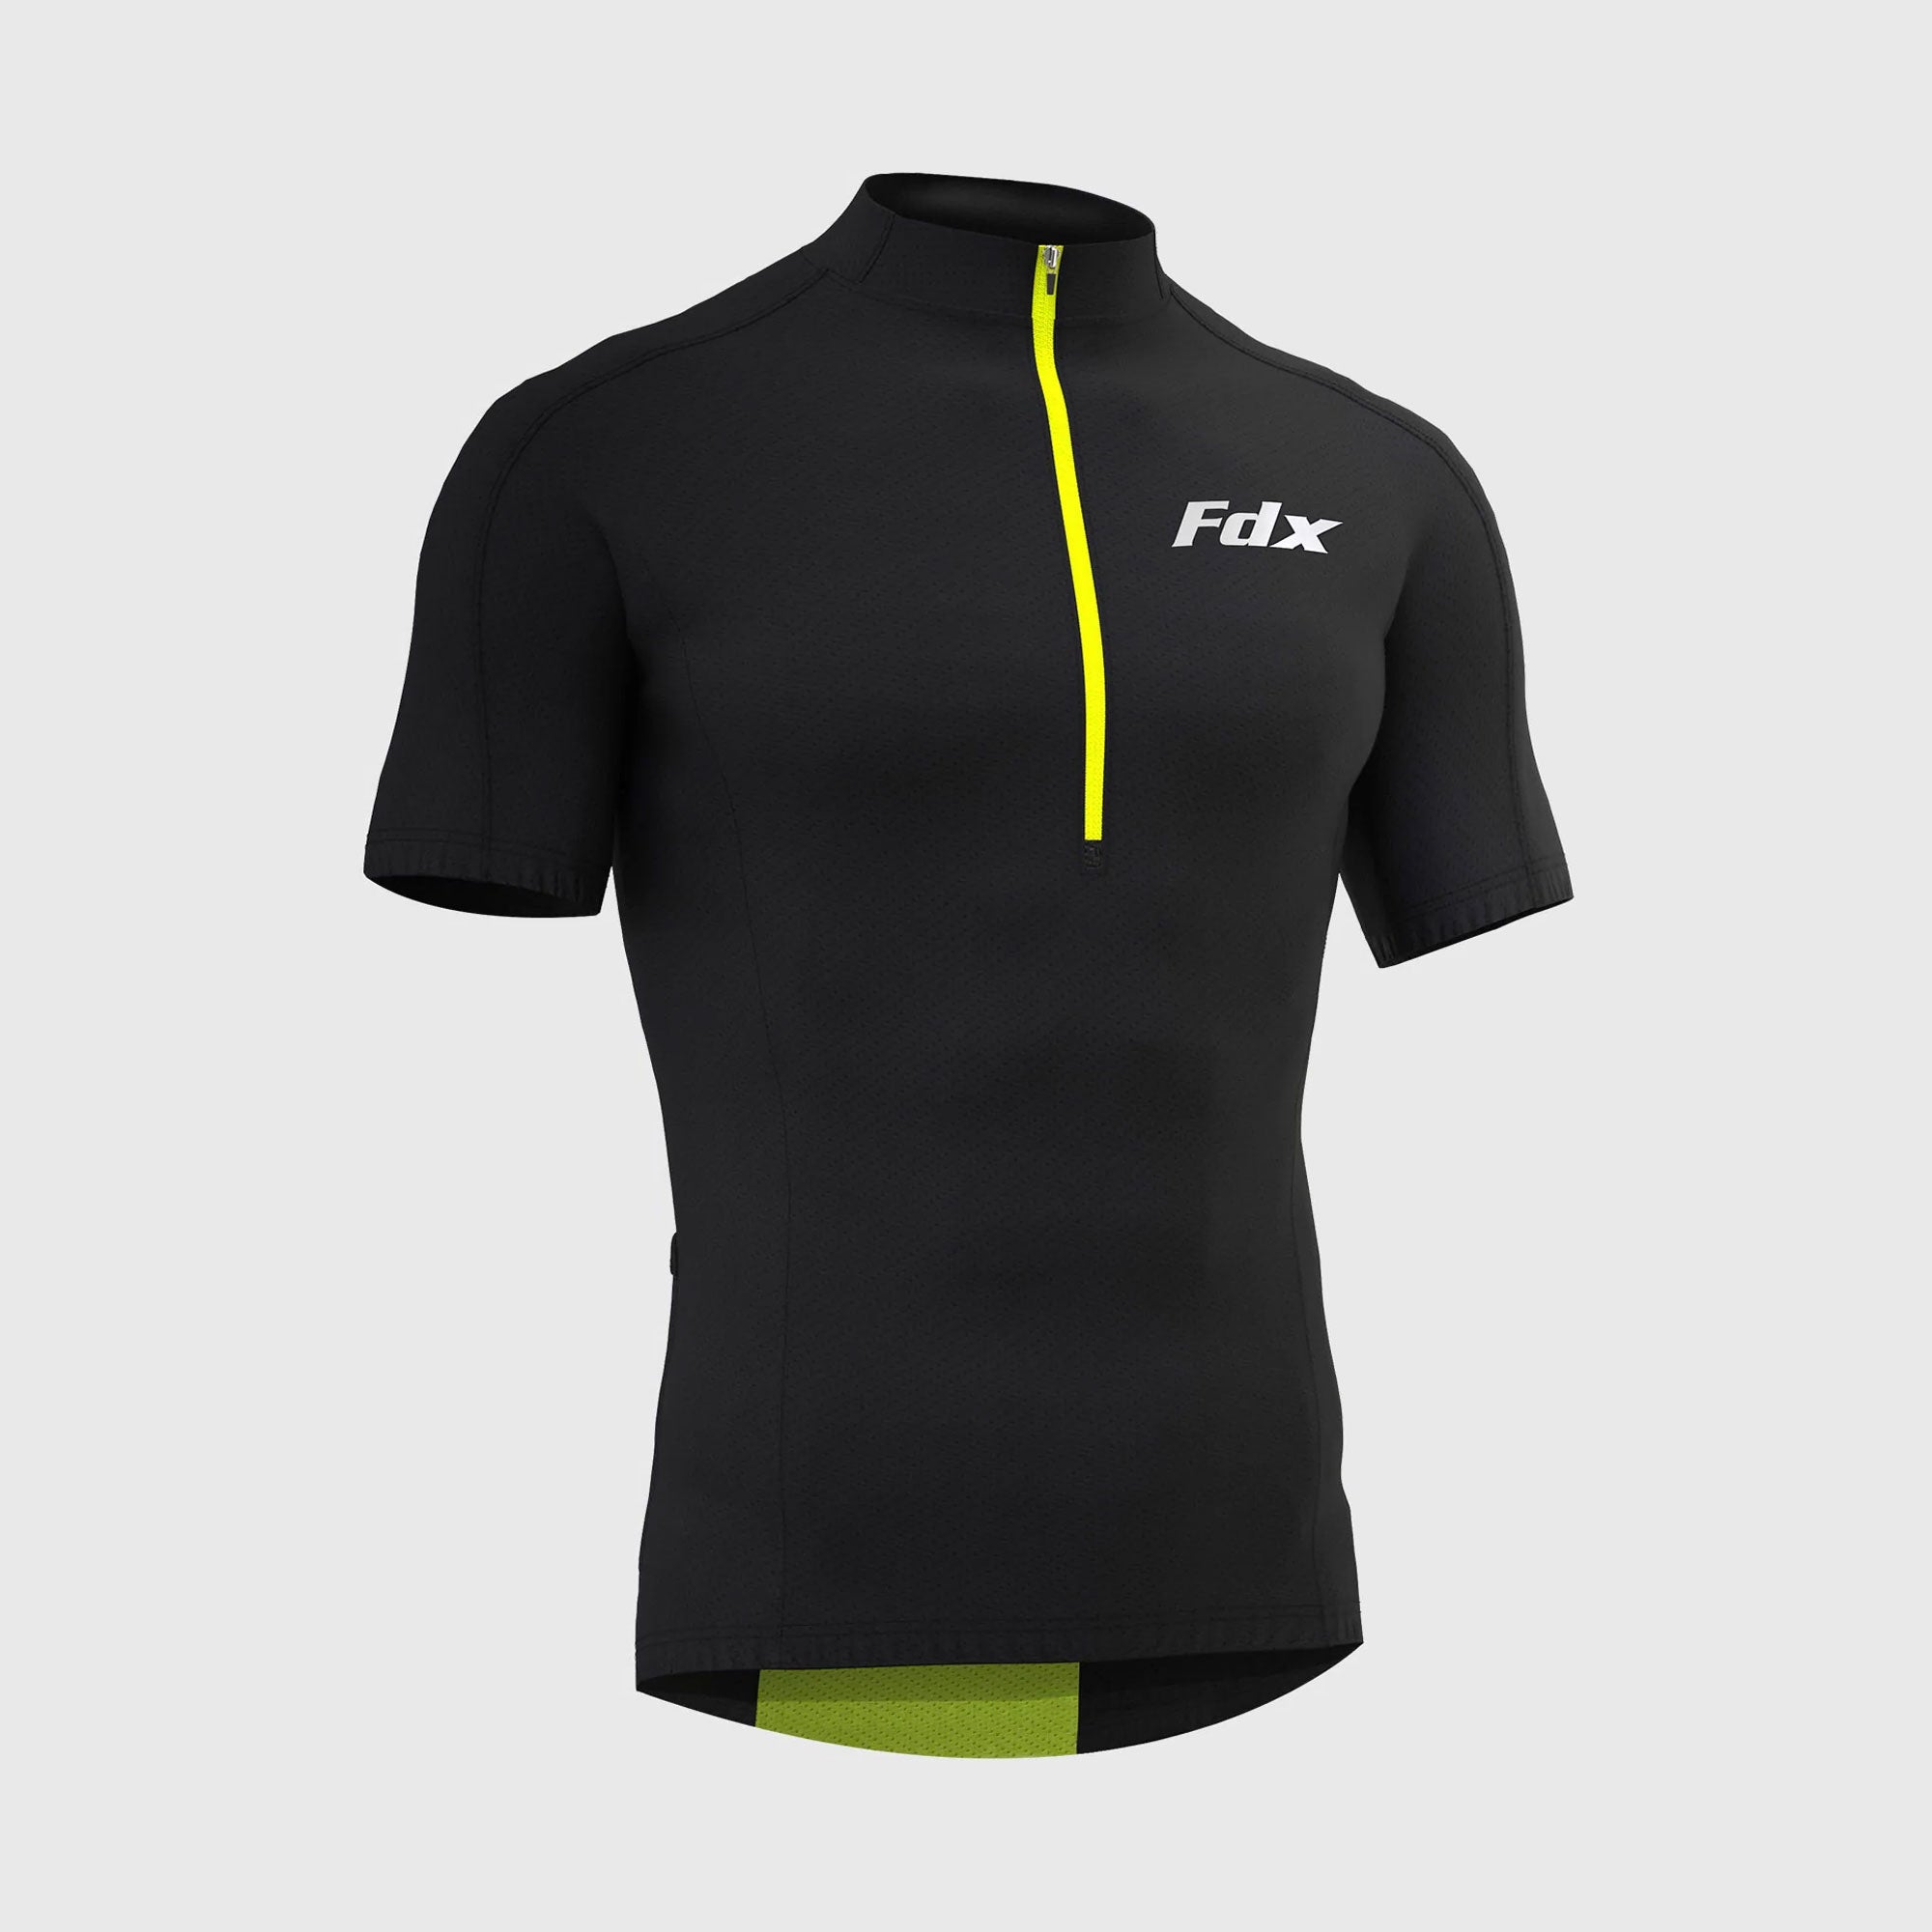 Fdx Mens Black Short Sleeve Cycling Jersey for Summer Best Road Bike Wear Top Light Weight, Full Zipper, Pockets & Hi-viz Reflectors - Pace